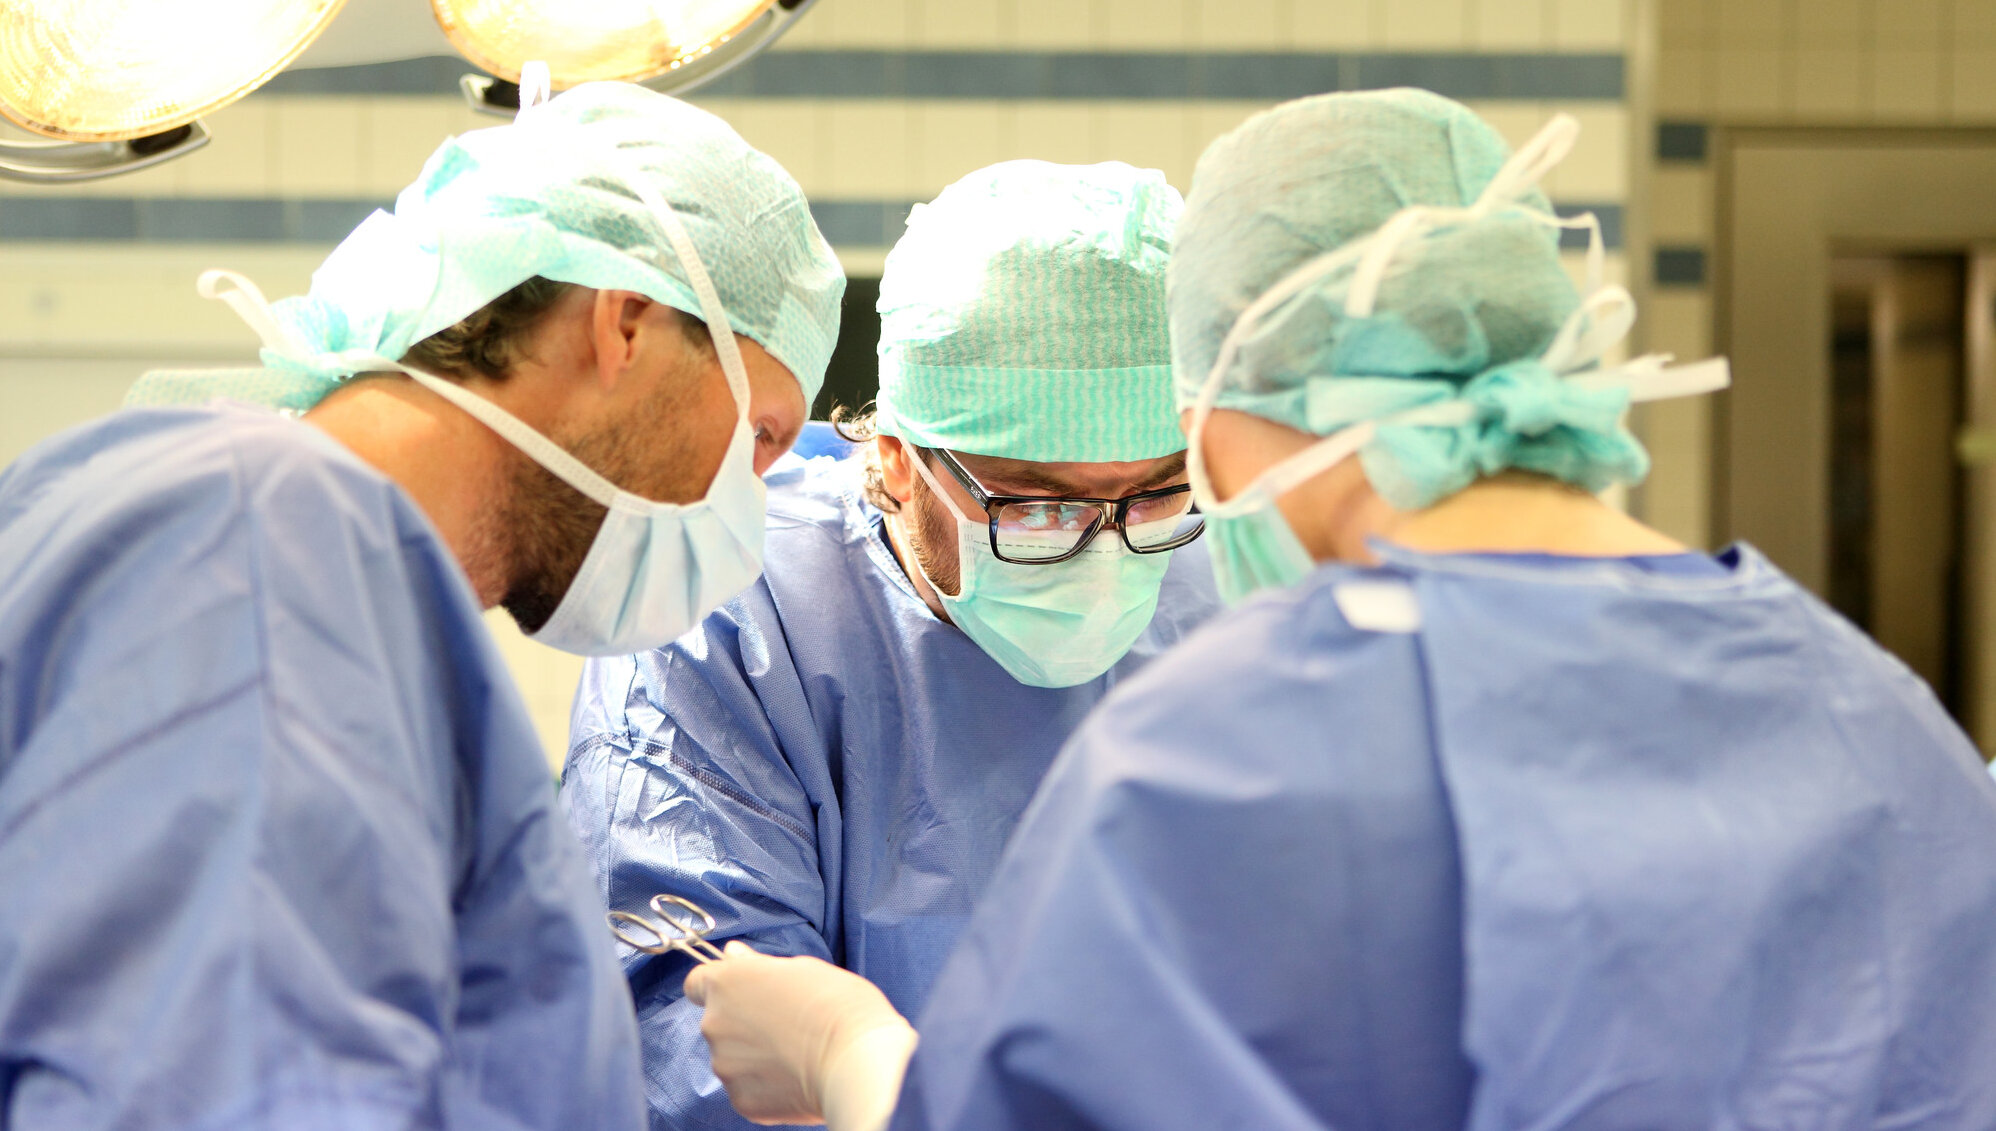 Drei Ärzte in OP-Kleidung operieren einen Patienten.